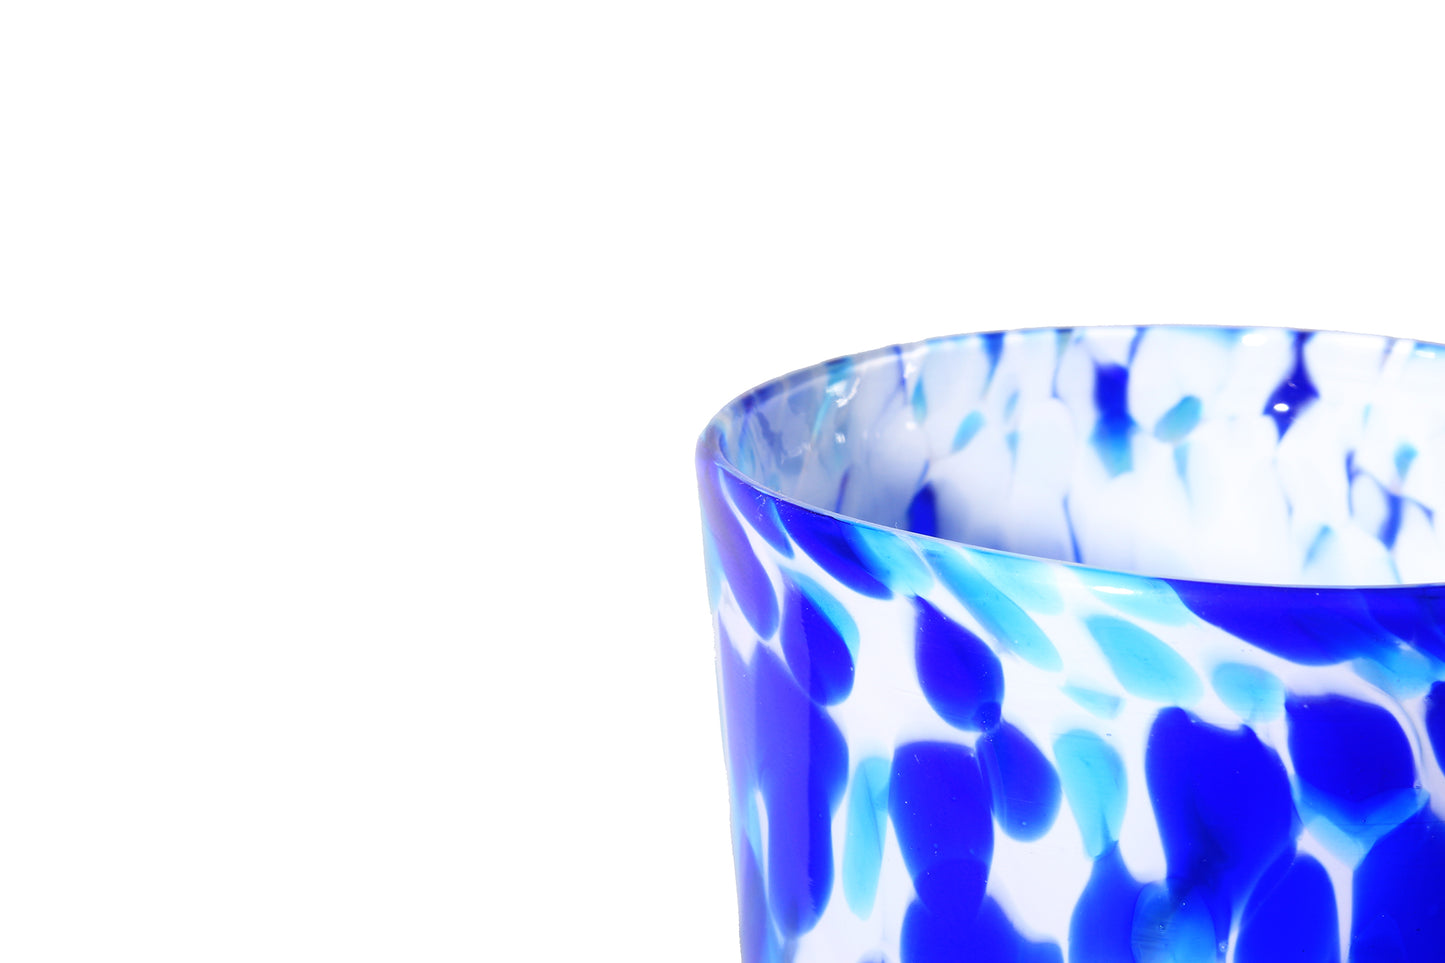 Pint Glass - White, Blue & Aqua